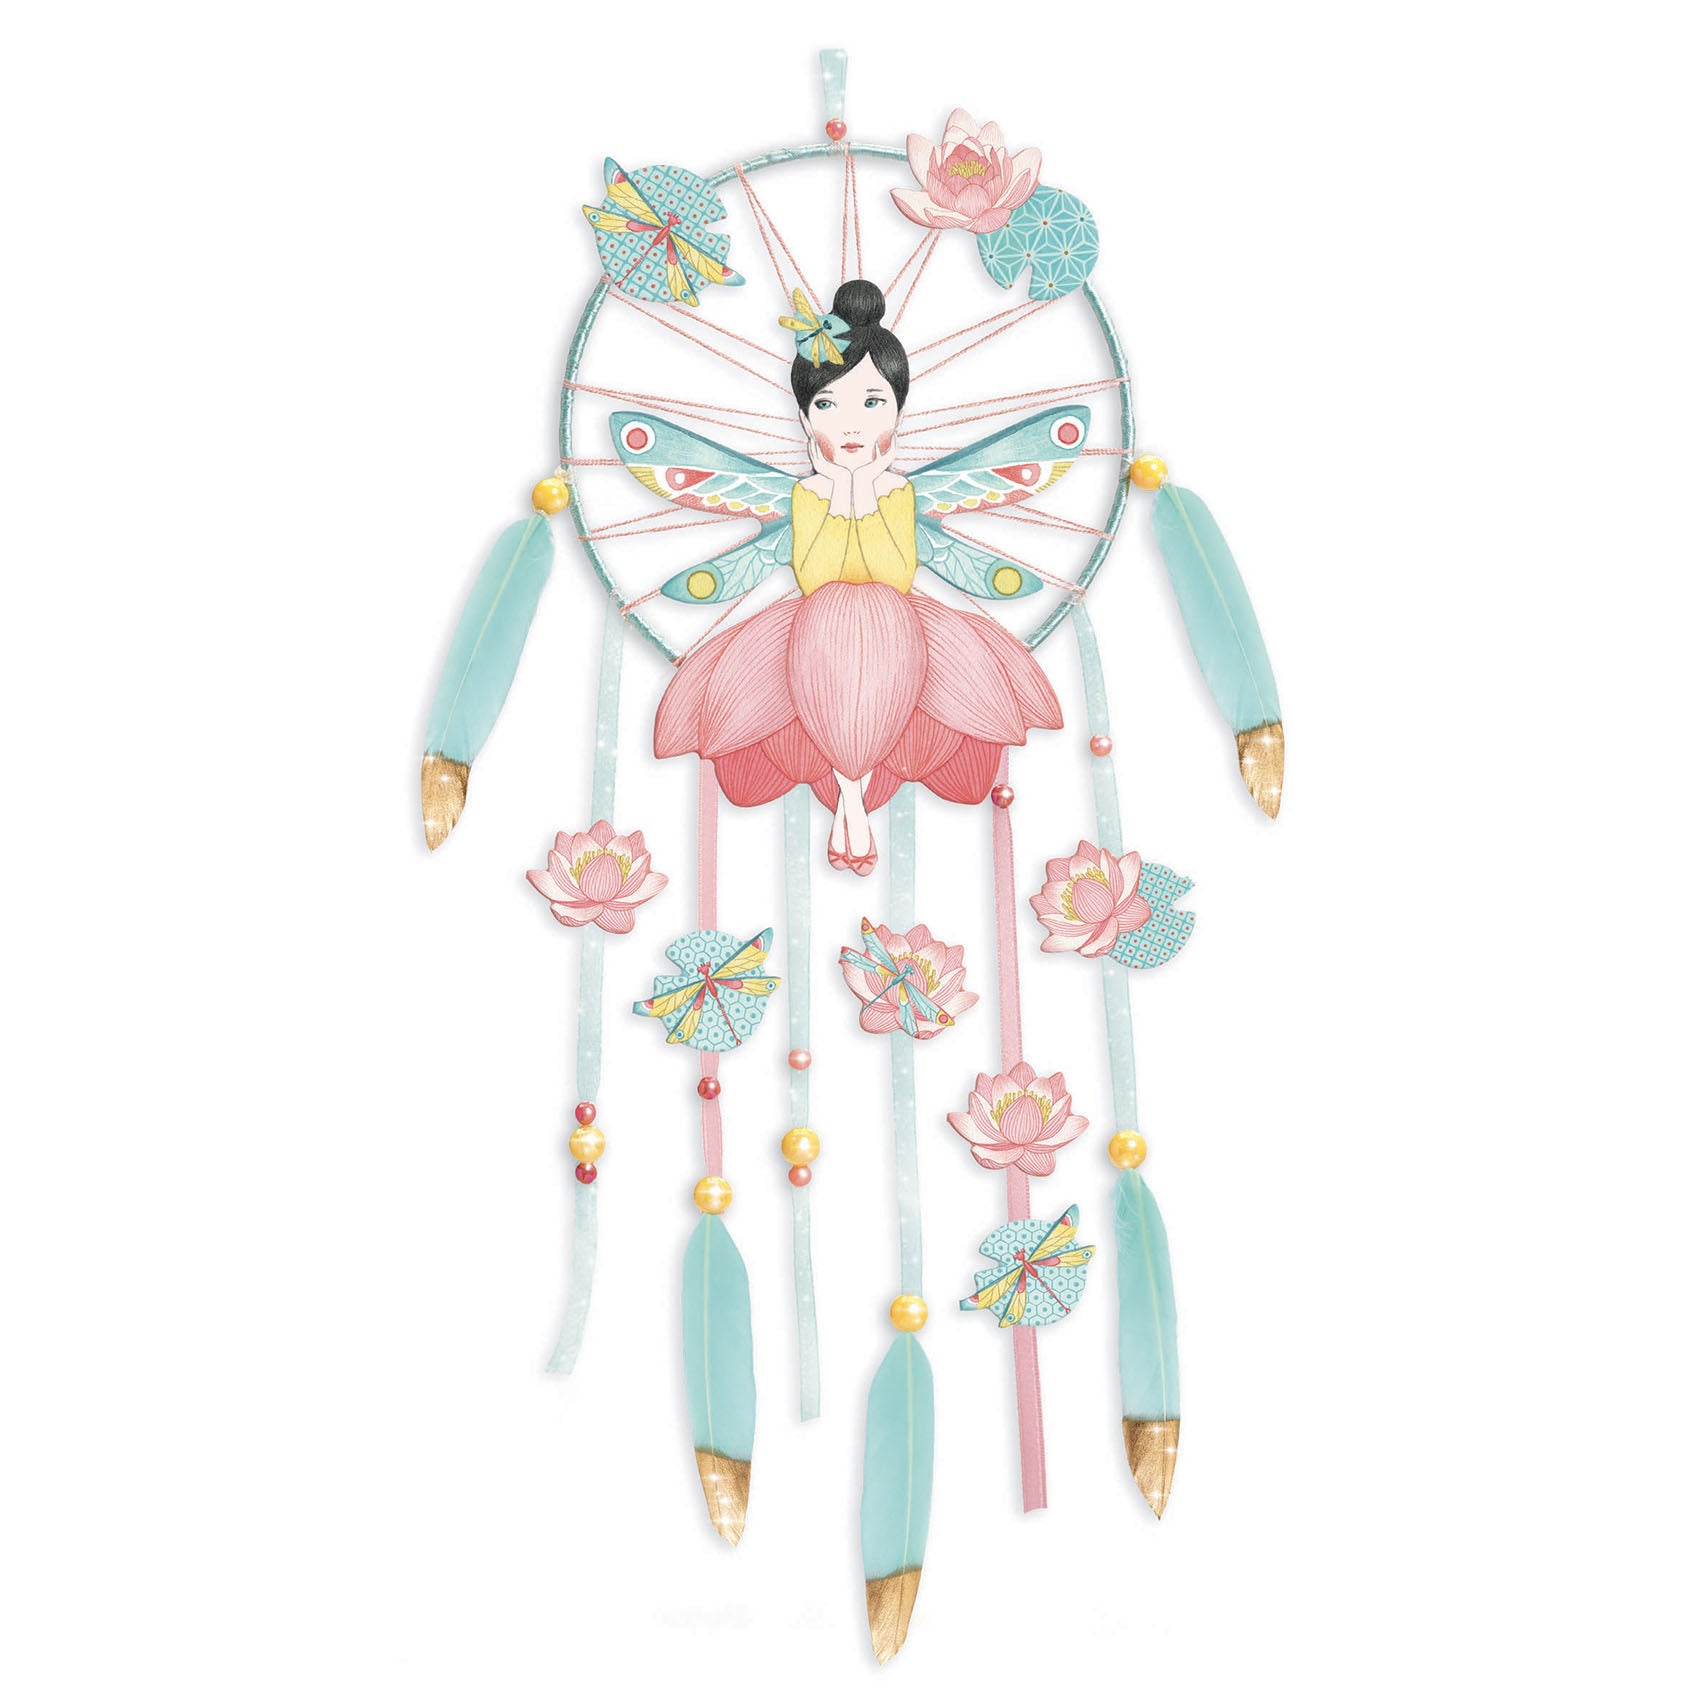 Djeco Do It Yourself Dreamcatcher – Lotus Fairy